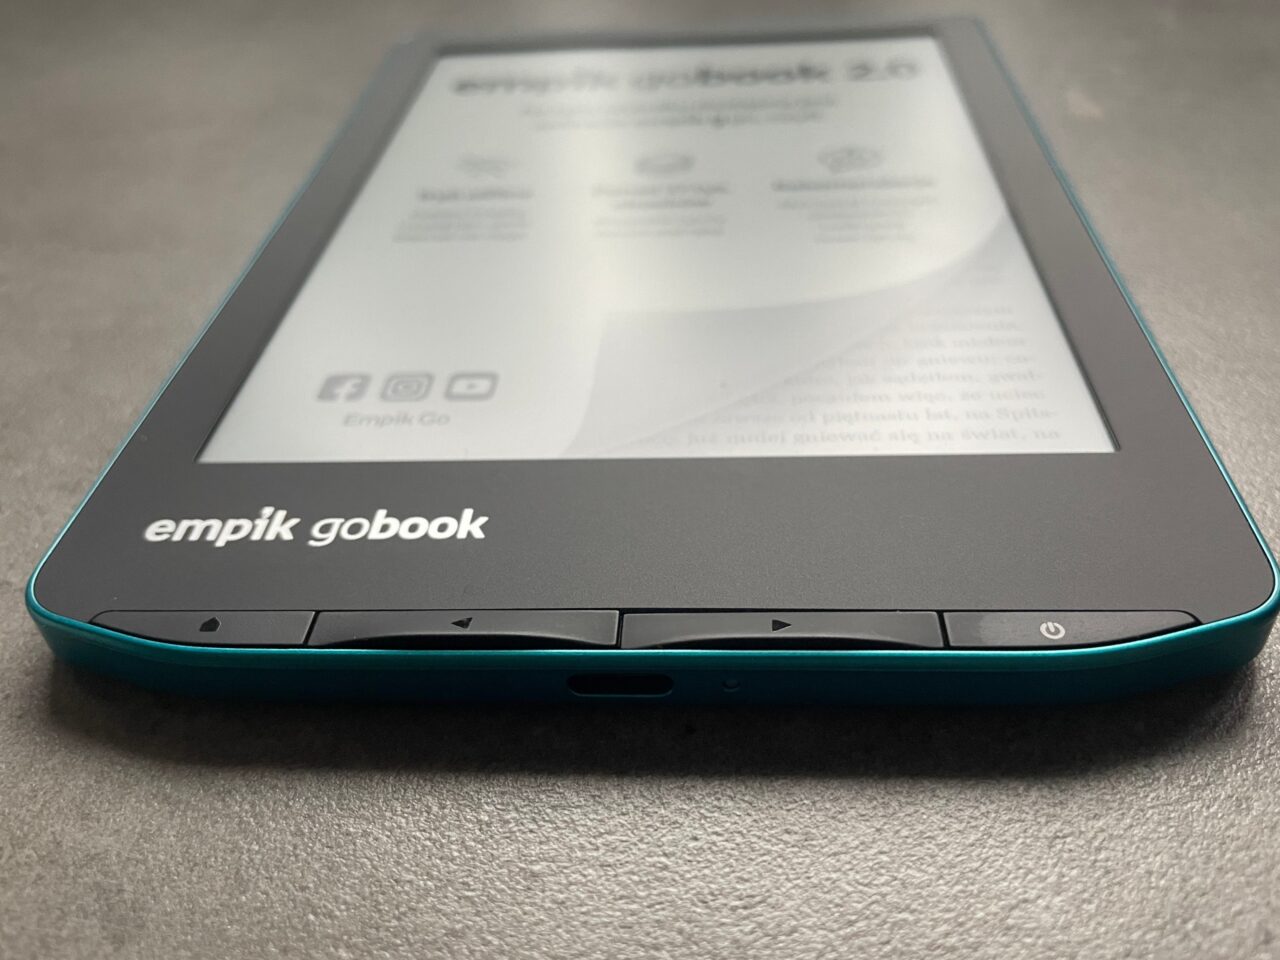 Czytnik e-booków marki Empik GoBook na szarym tle, z widocznym ekranem i częścią niebiesko-zielonej obudowy.